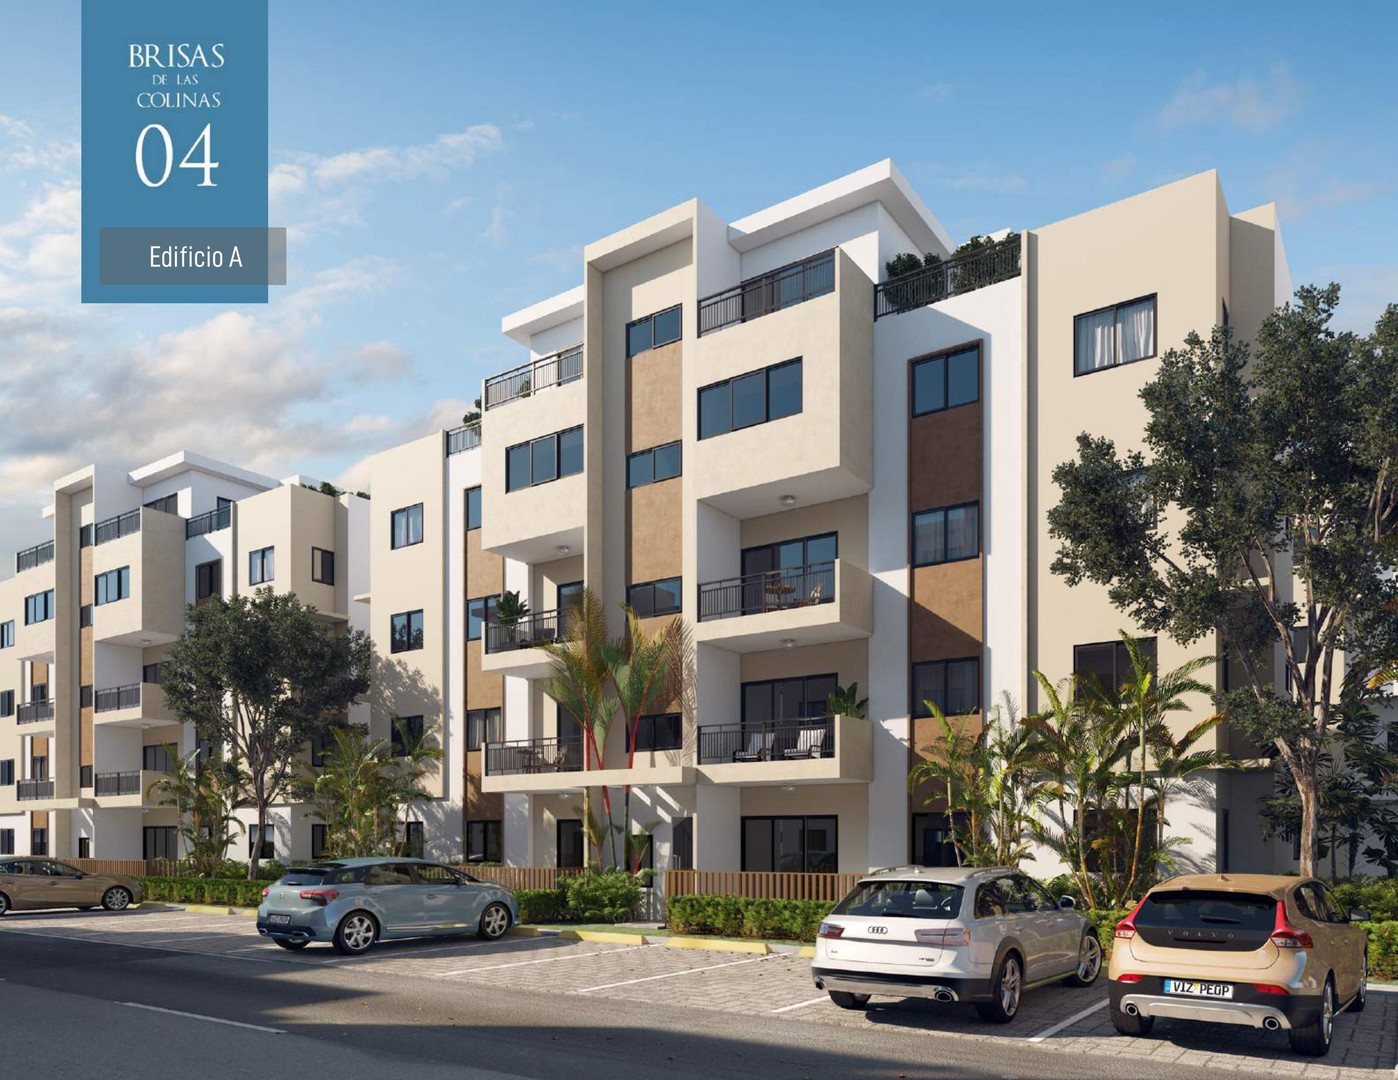 apartamentos - Apartamento en ventas en el proyecto Brisas de las Colinas 4, Santo Domingo 0